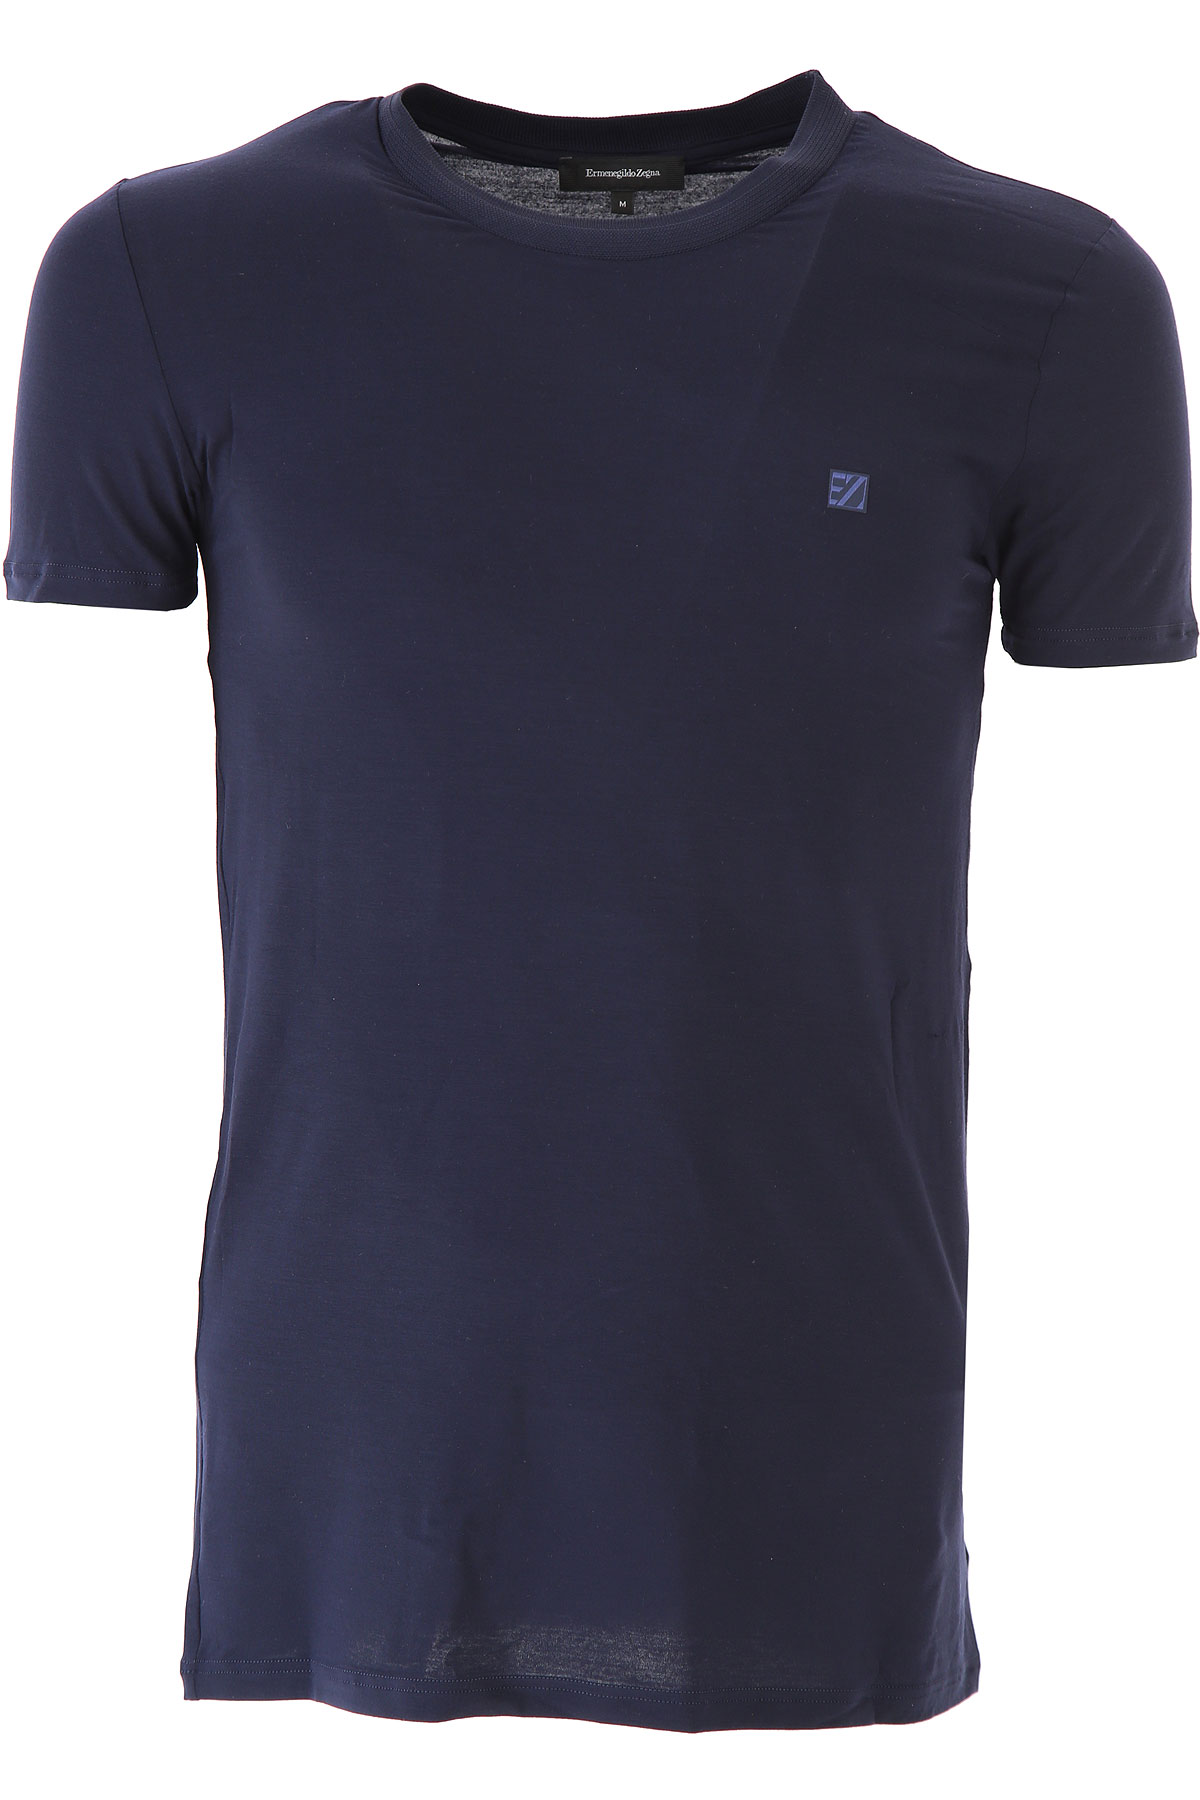 Ermenegildo Zegna T-shirt Homme , Bleu marine, Modal, 2017, M S XL